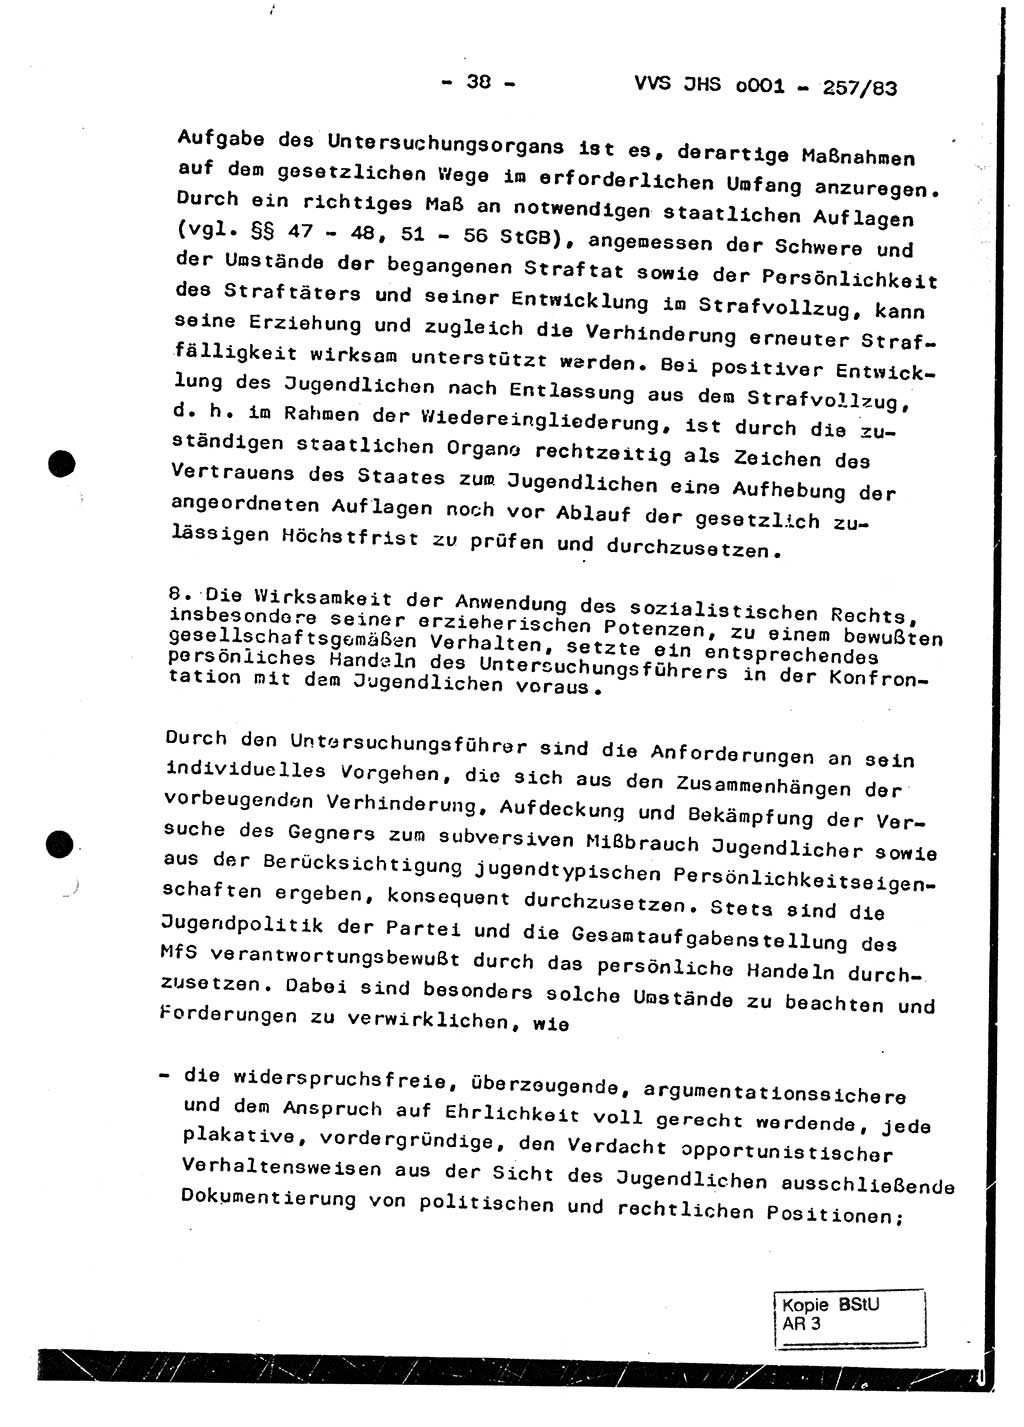 Dissertation, Oberst Helmut Lubas (BV Mdg.), Oberstleutnant Manfred Eschberger (HA IX), Oberleutnant Hans-Jürgen Ludwig (JHS), Ministerium für Staatssicherheit (MfS) [Deutsche Demokratische Republik (DDR)], Juristische Hochschule (JHS), Vertrauliche Verschlußsache (VVS) o001-257/83, Potsdam 1983, Seite 38 (Diss. MfS DDR JHS VVS o001-257/83 1983, S. 38)